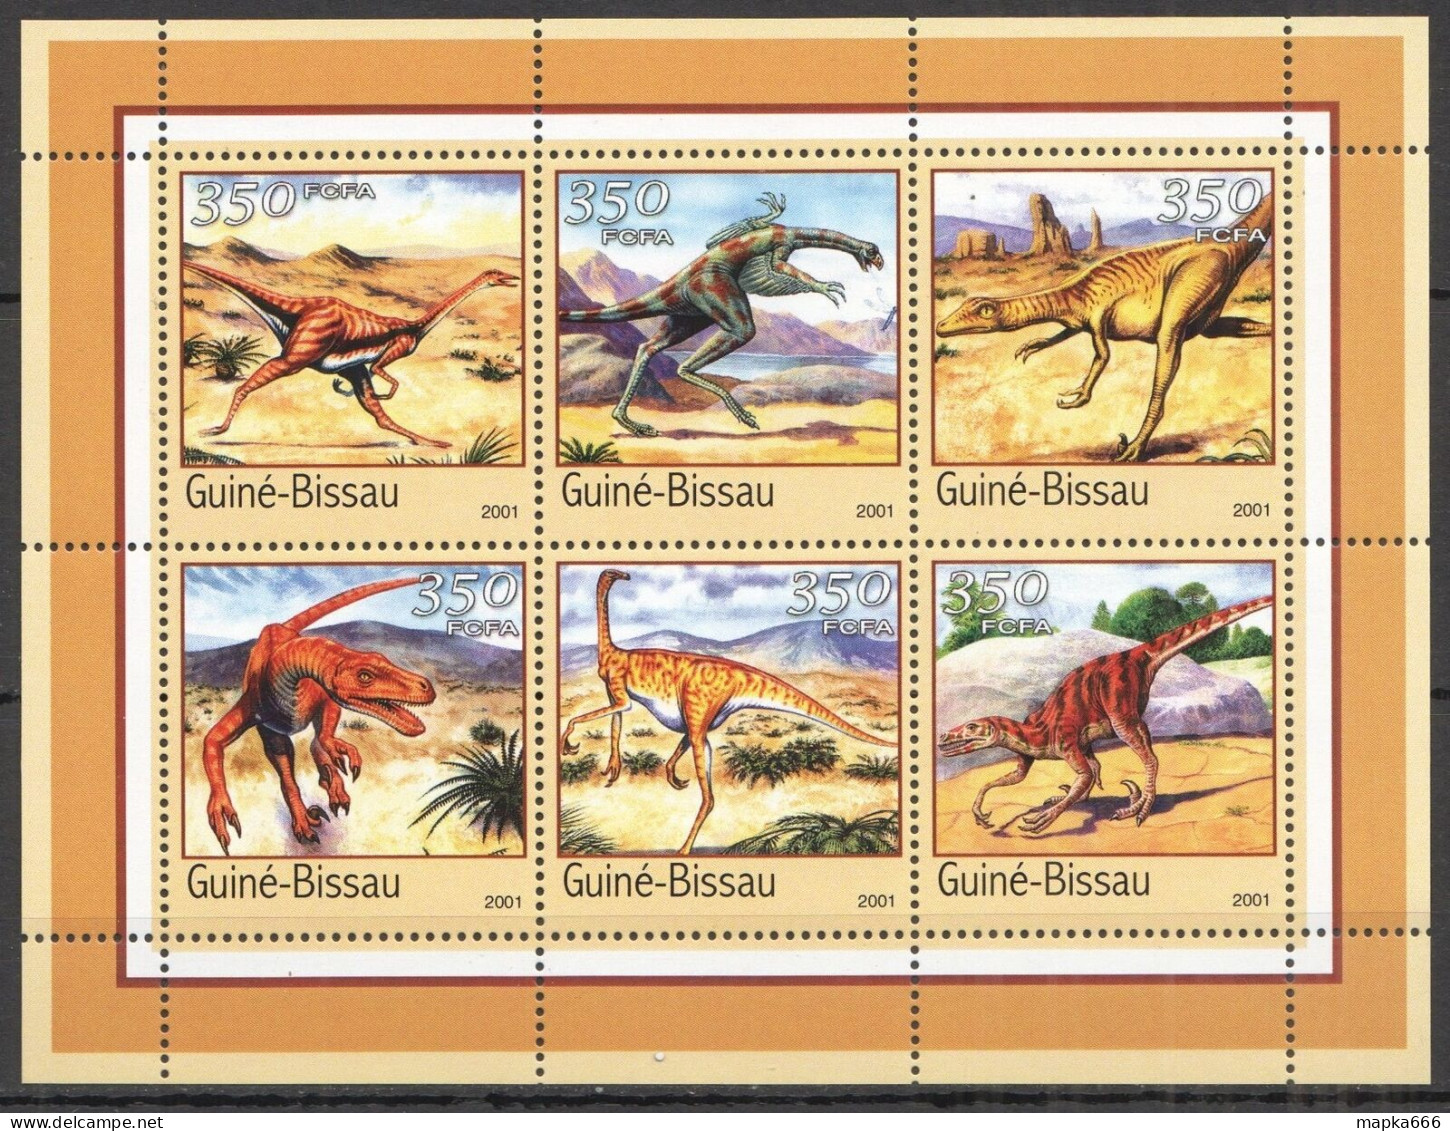 B1506 2001 Guinea-Bissau Fauna Prehistoric Animals Dinosaurs Kb Mnh - Prehistóricos